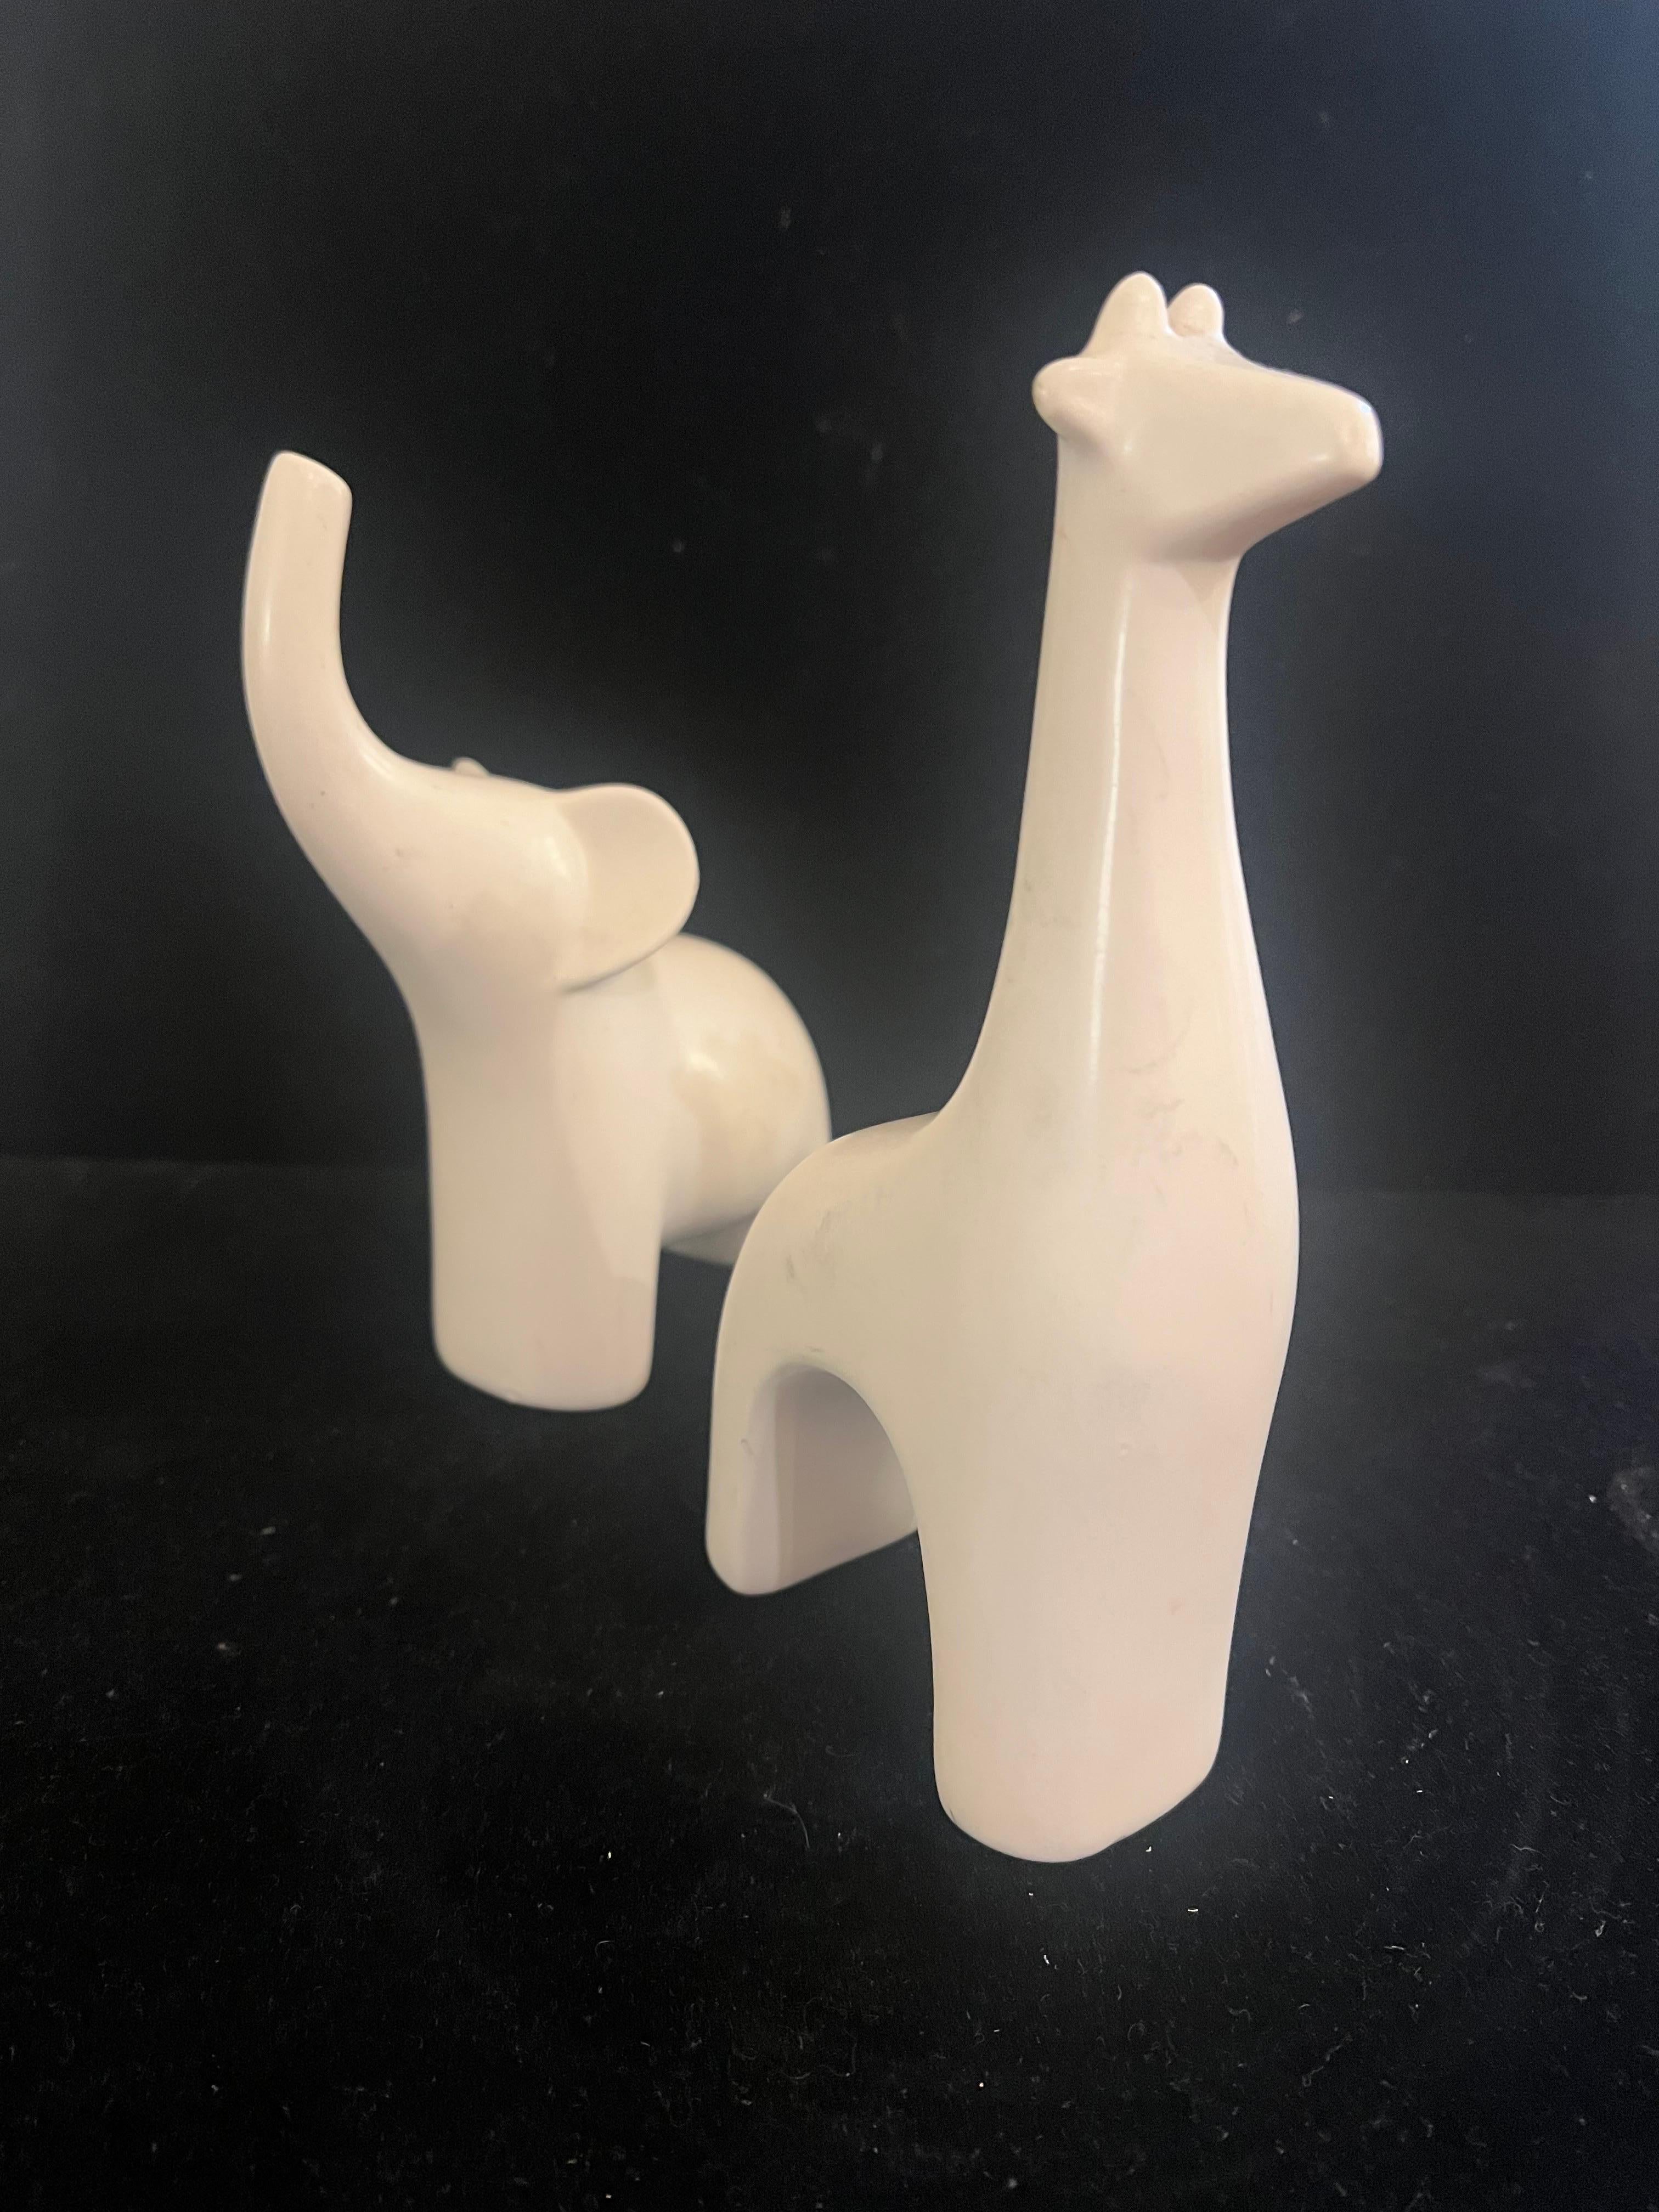 Whimsical Modernist Pair of Elephant & Giraffe in Mate satin Porzellan-Finish, schöner Zustand ca. 1980er Jahre keine Chips oder Risse.